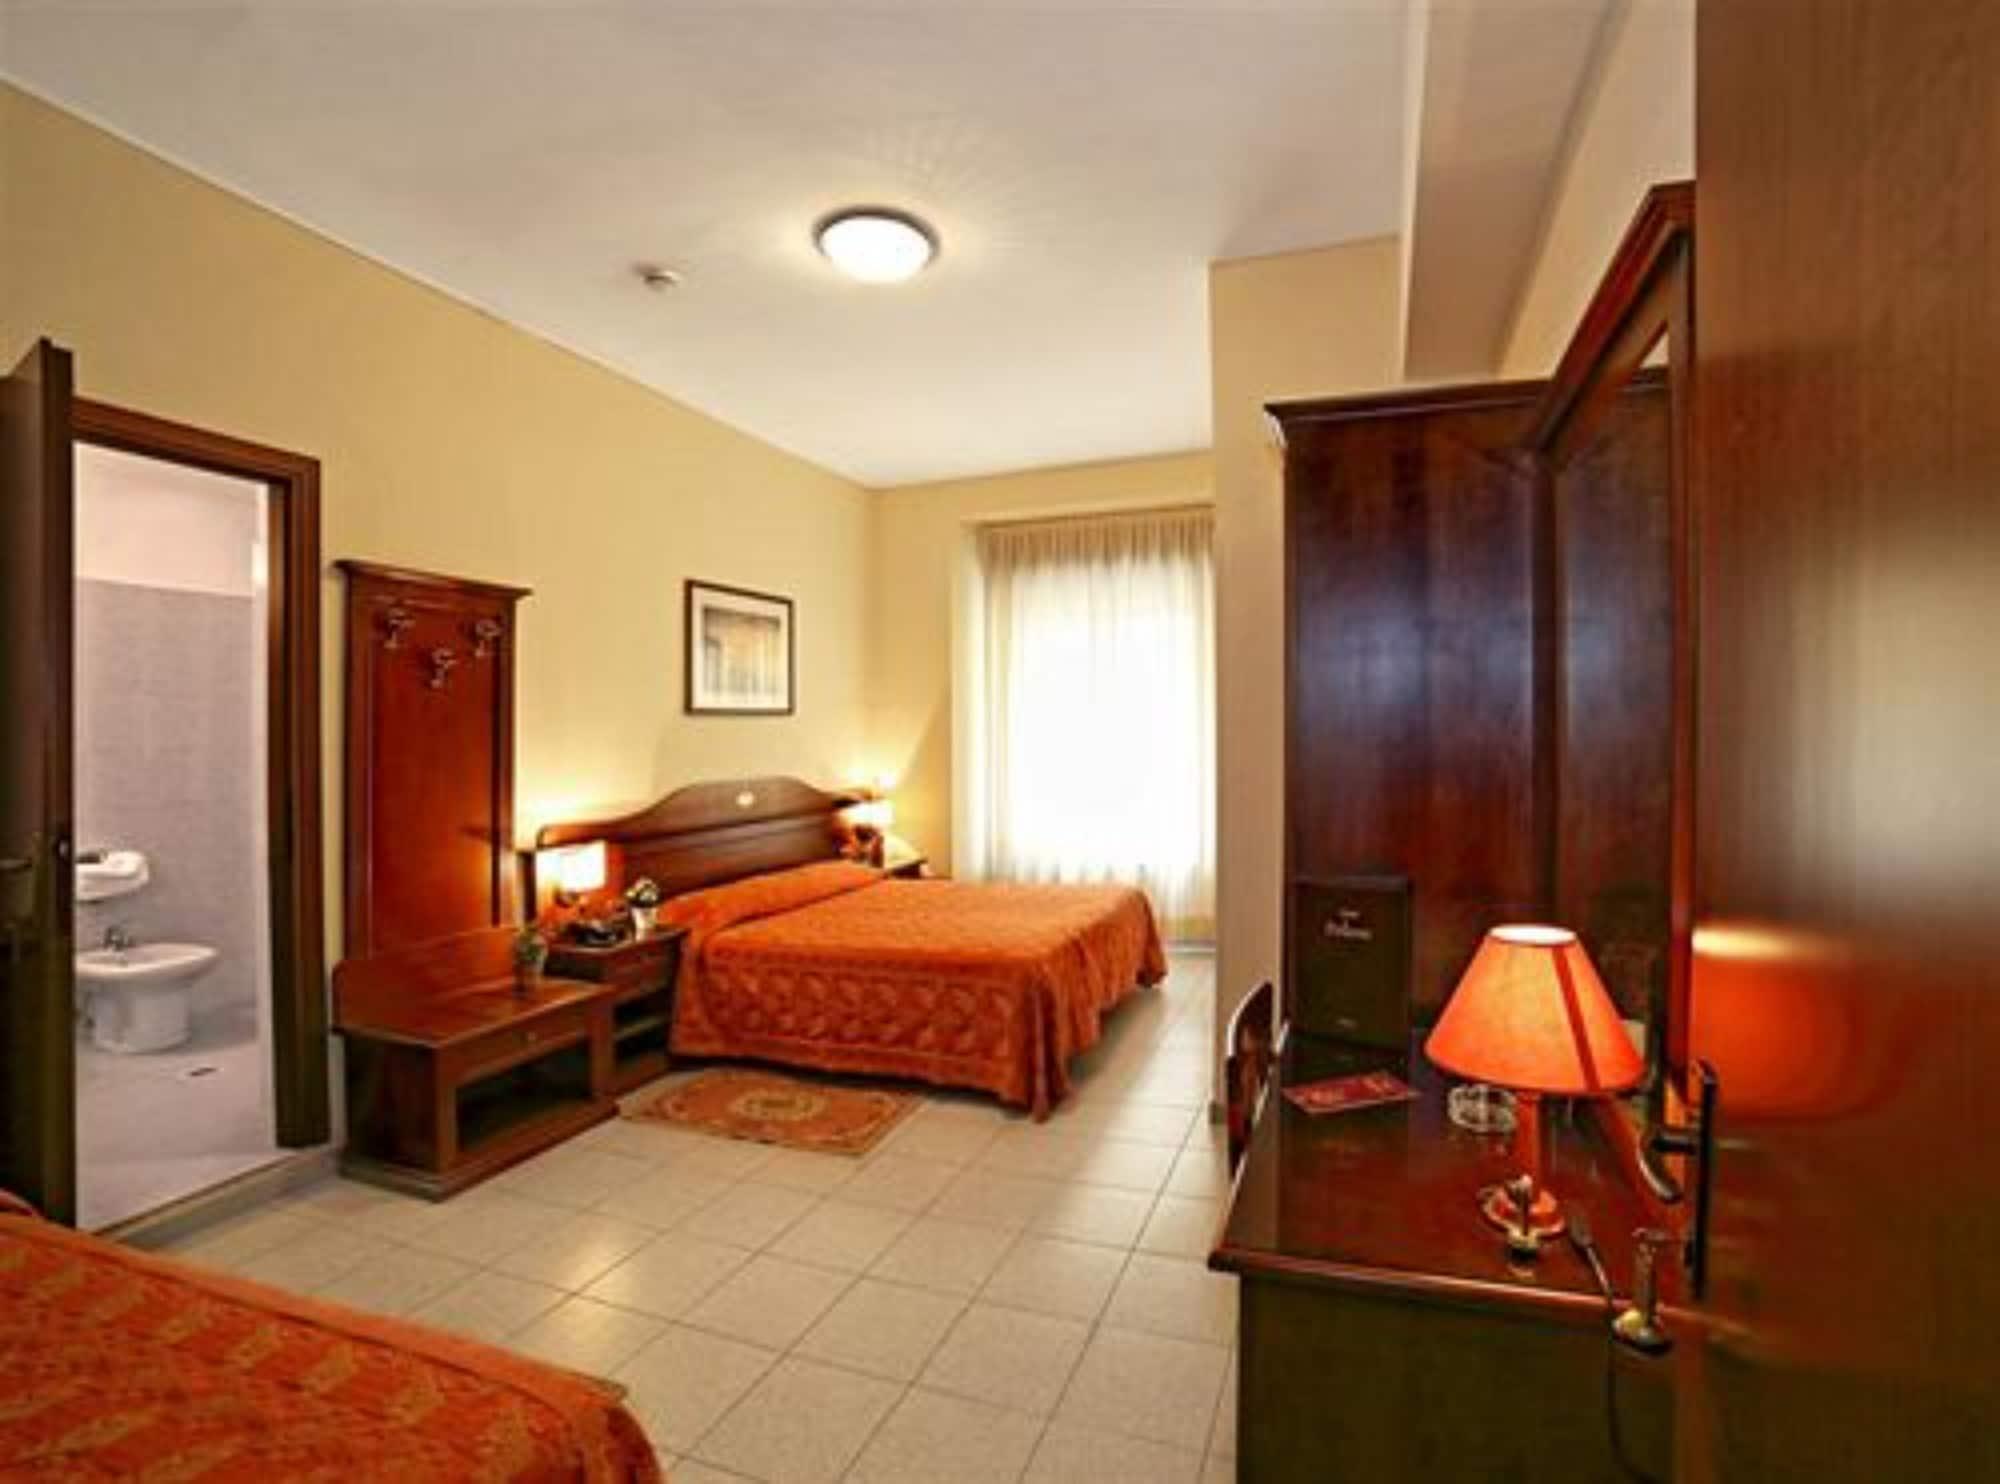 Hotel Pavone Milano Esterno foto